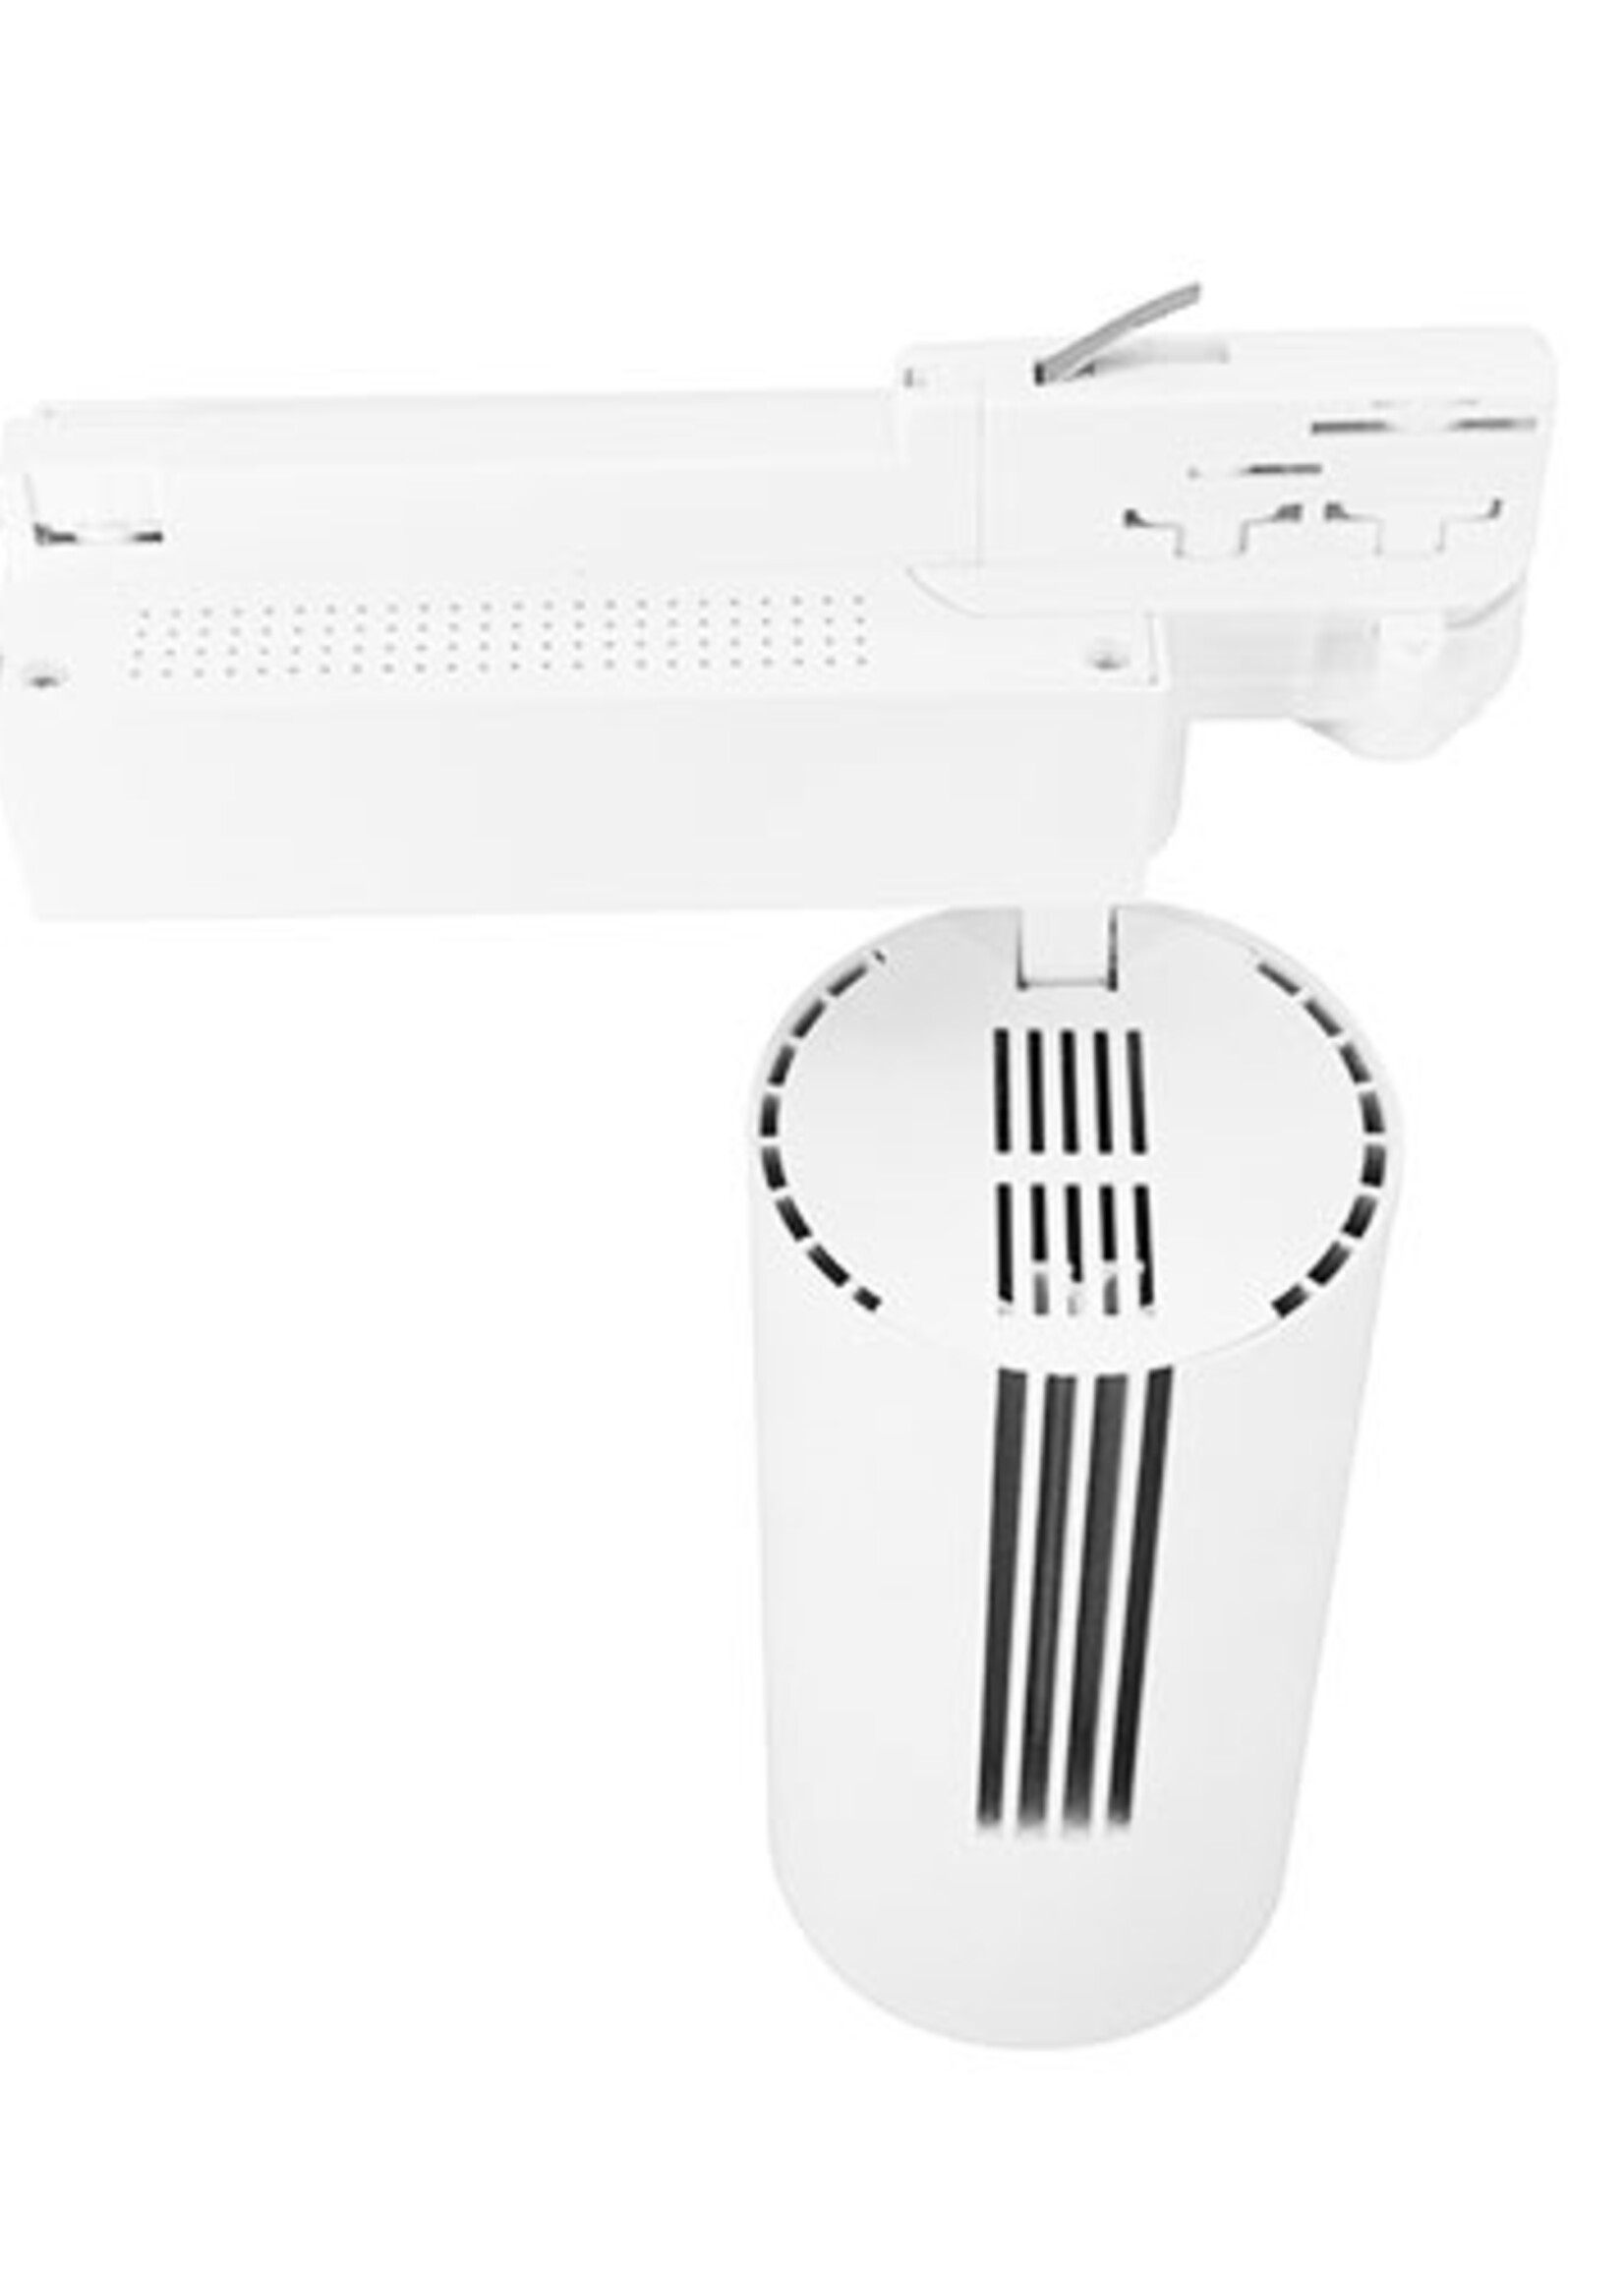 LEDWINKEL-Online LED Track Light Head 3 phase white 40W